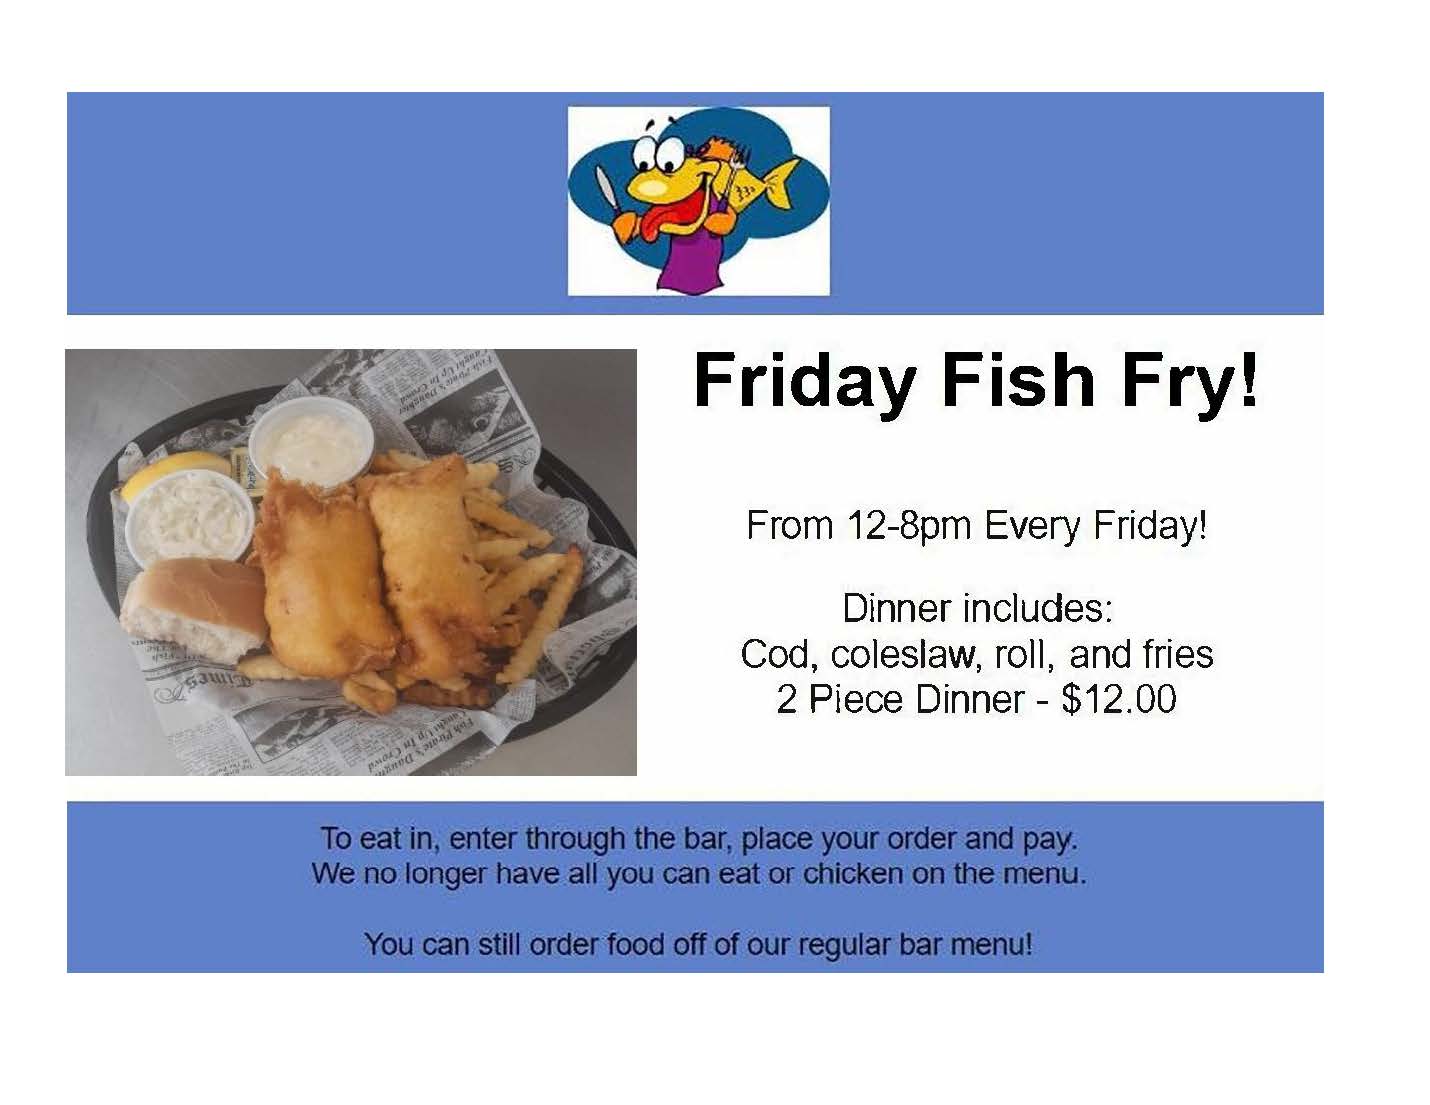 Friday Fish Fry at OCSC